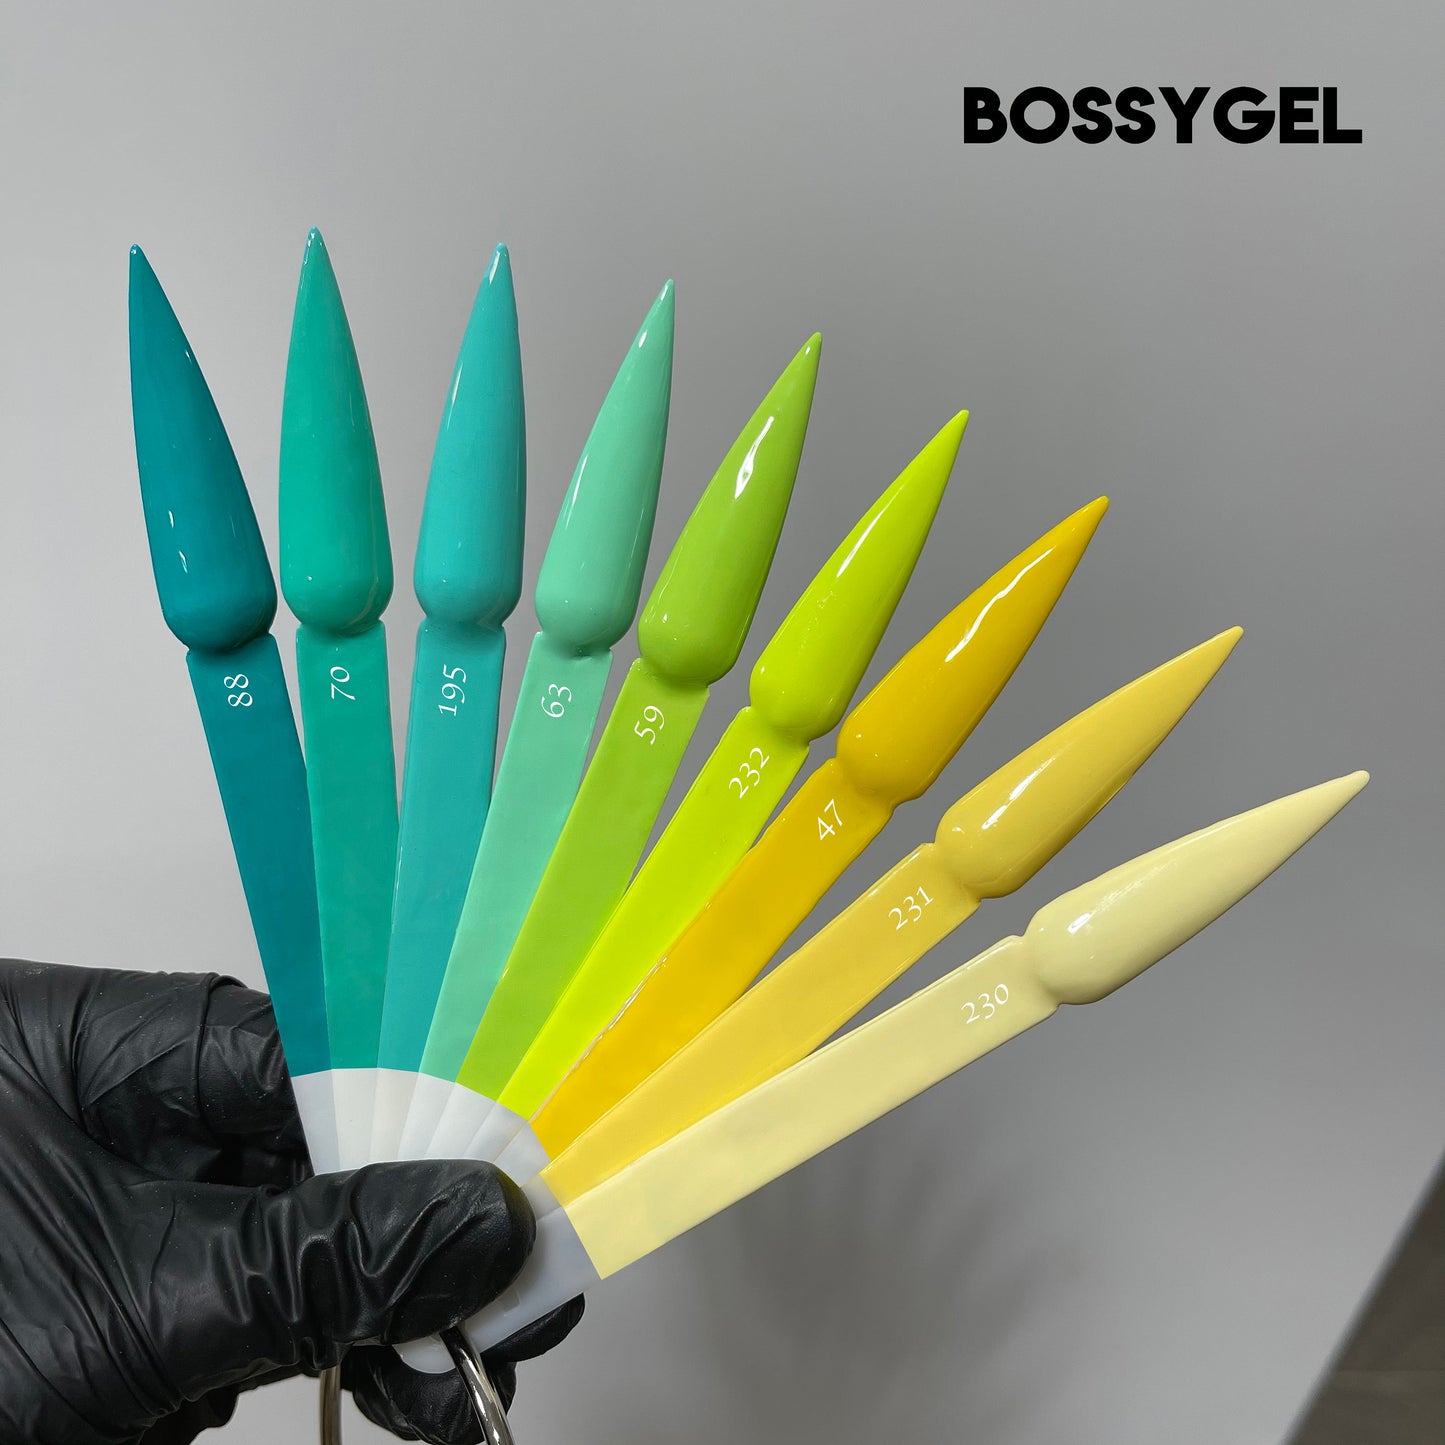 Bossy Gel - Gel Polish(15 ml) # BS47